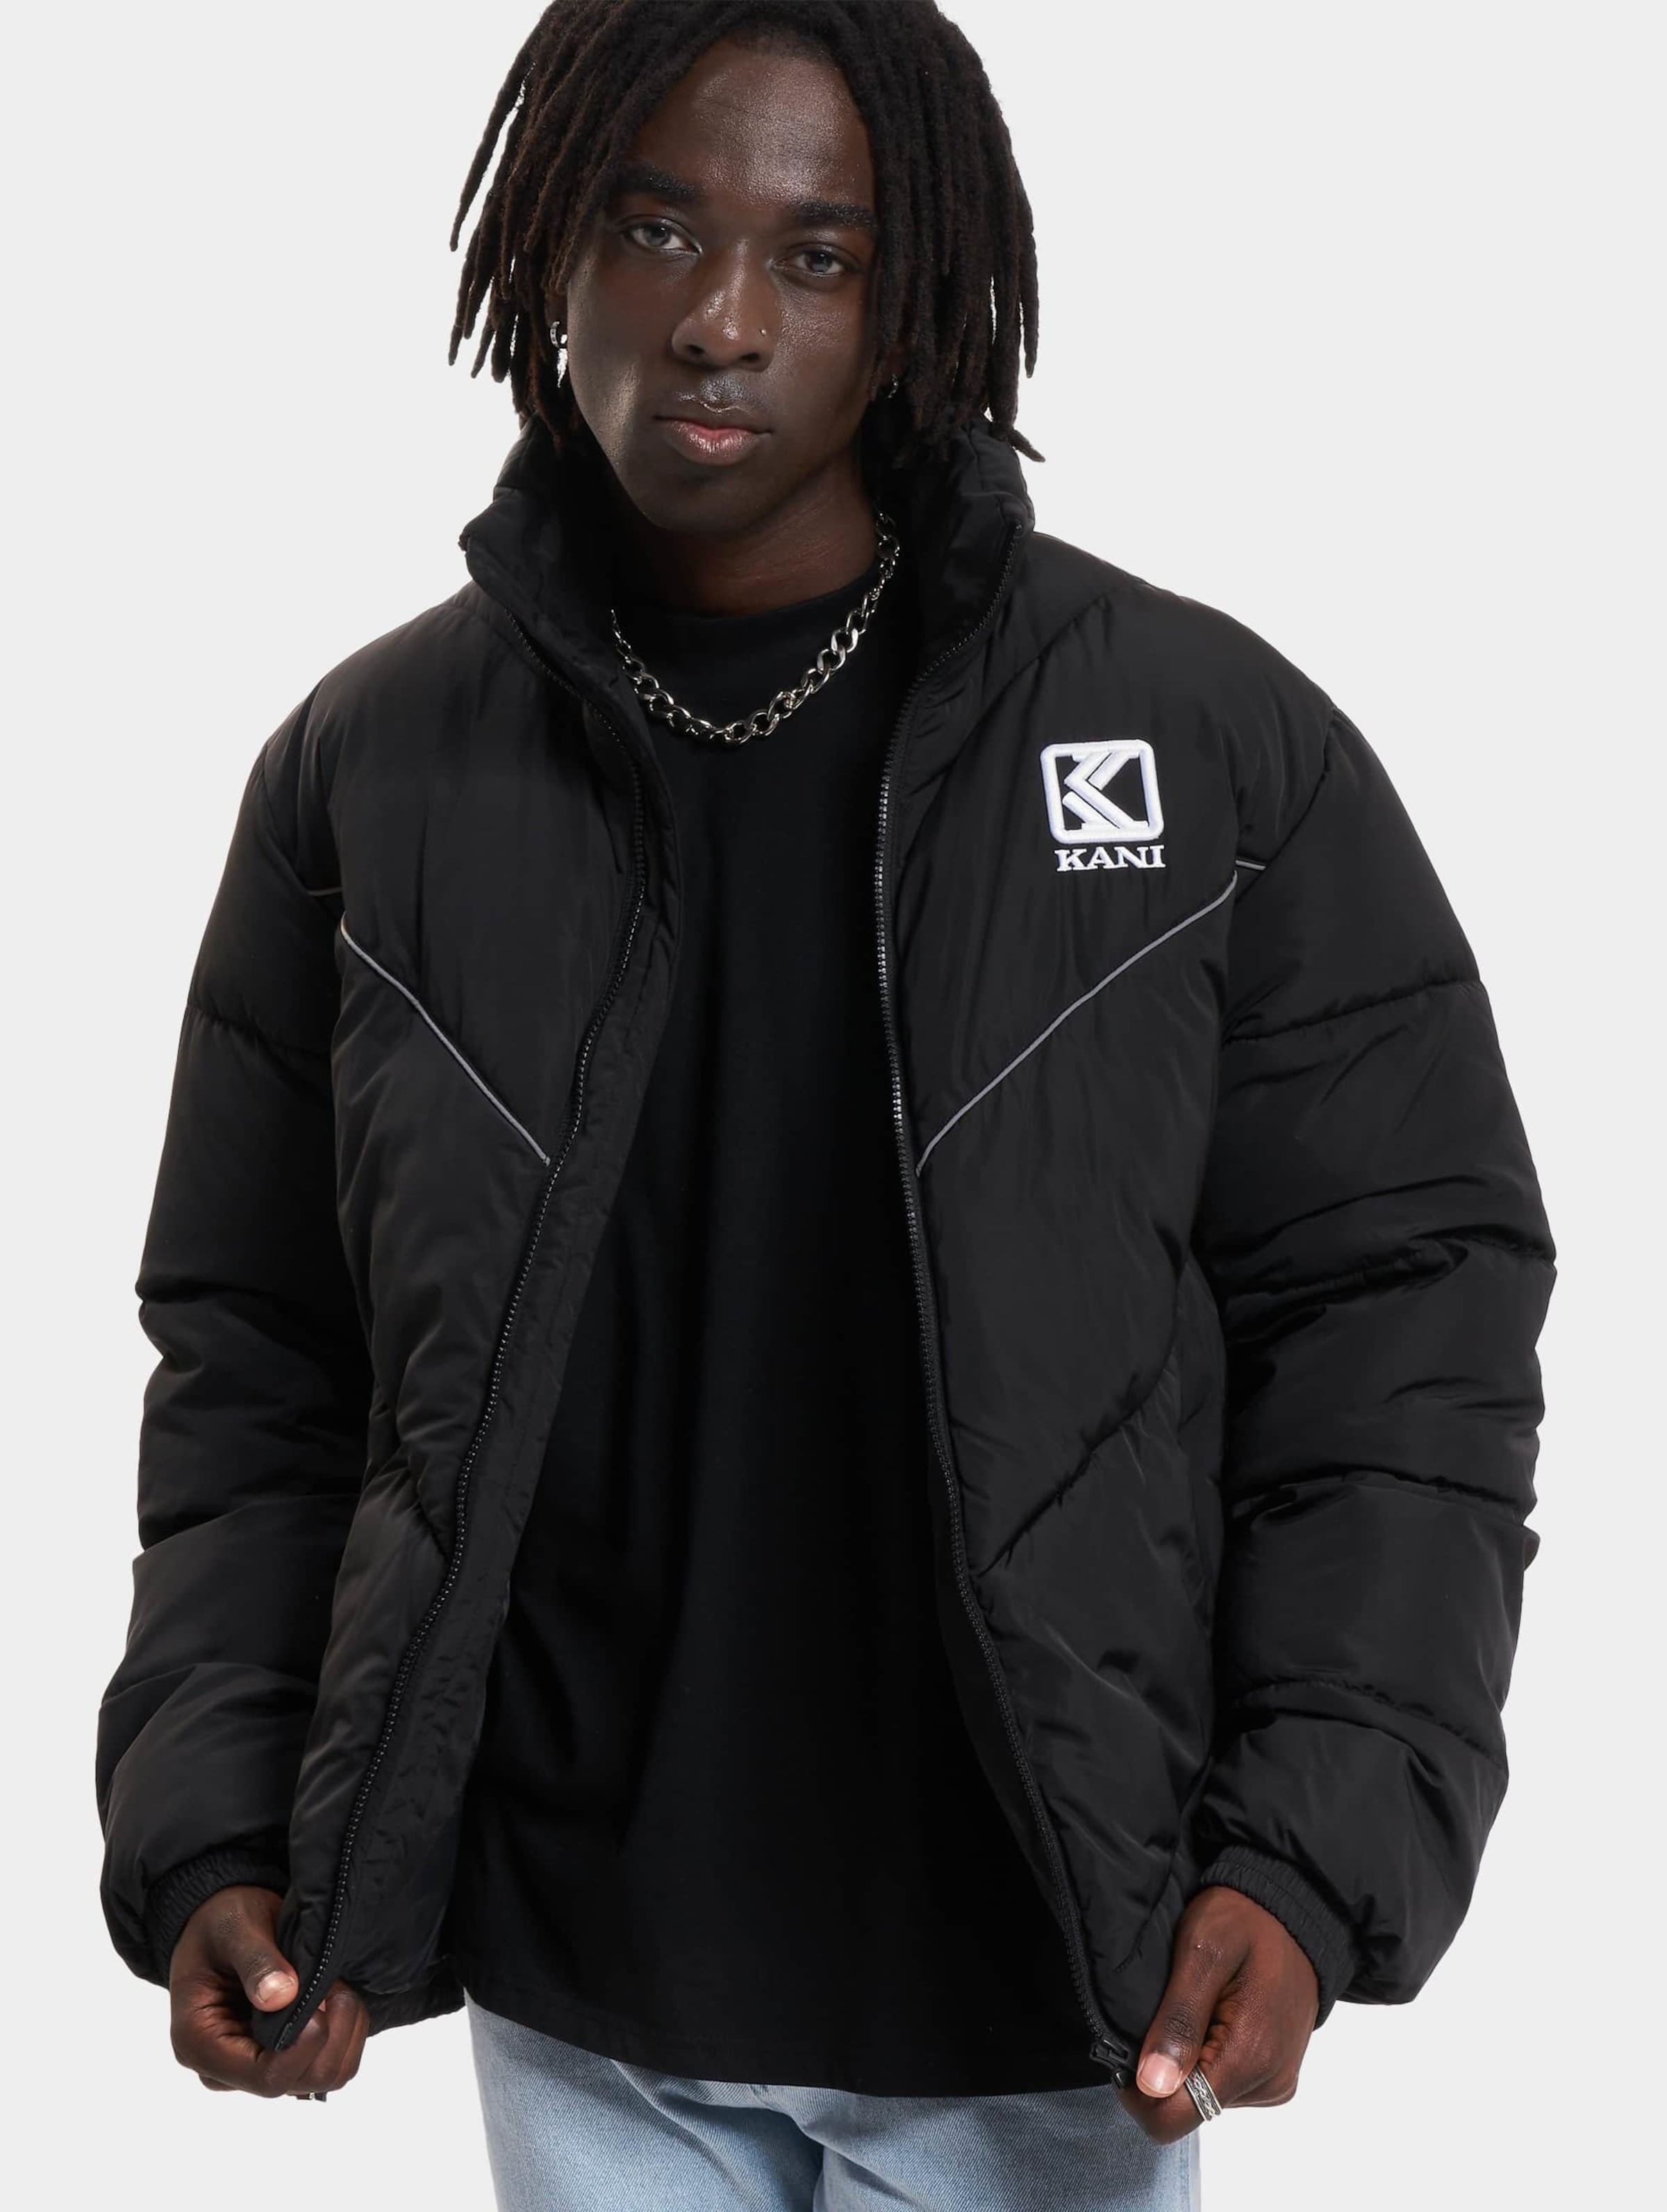 Karl Kani Og Puffer Jacket Mannen op kleur zwart, Maat XL